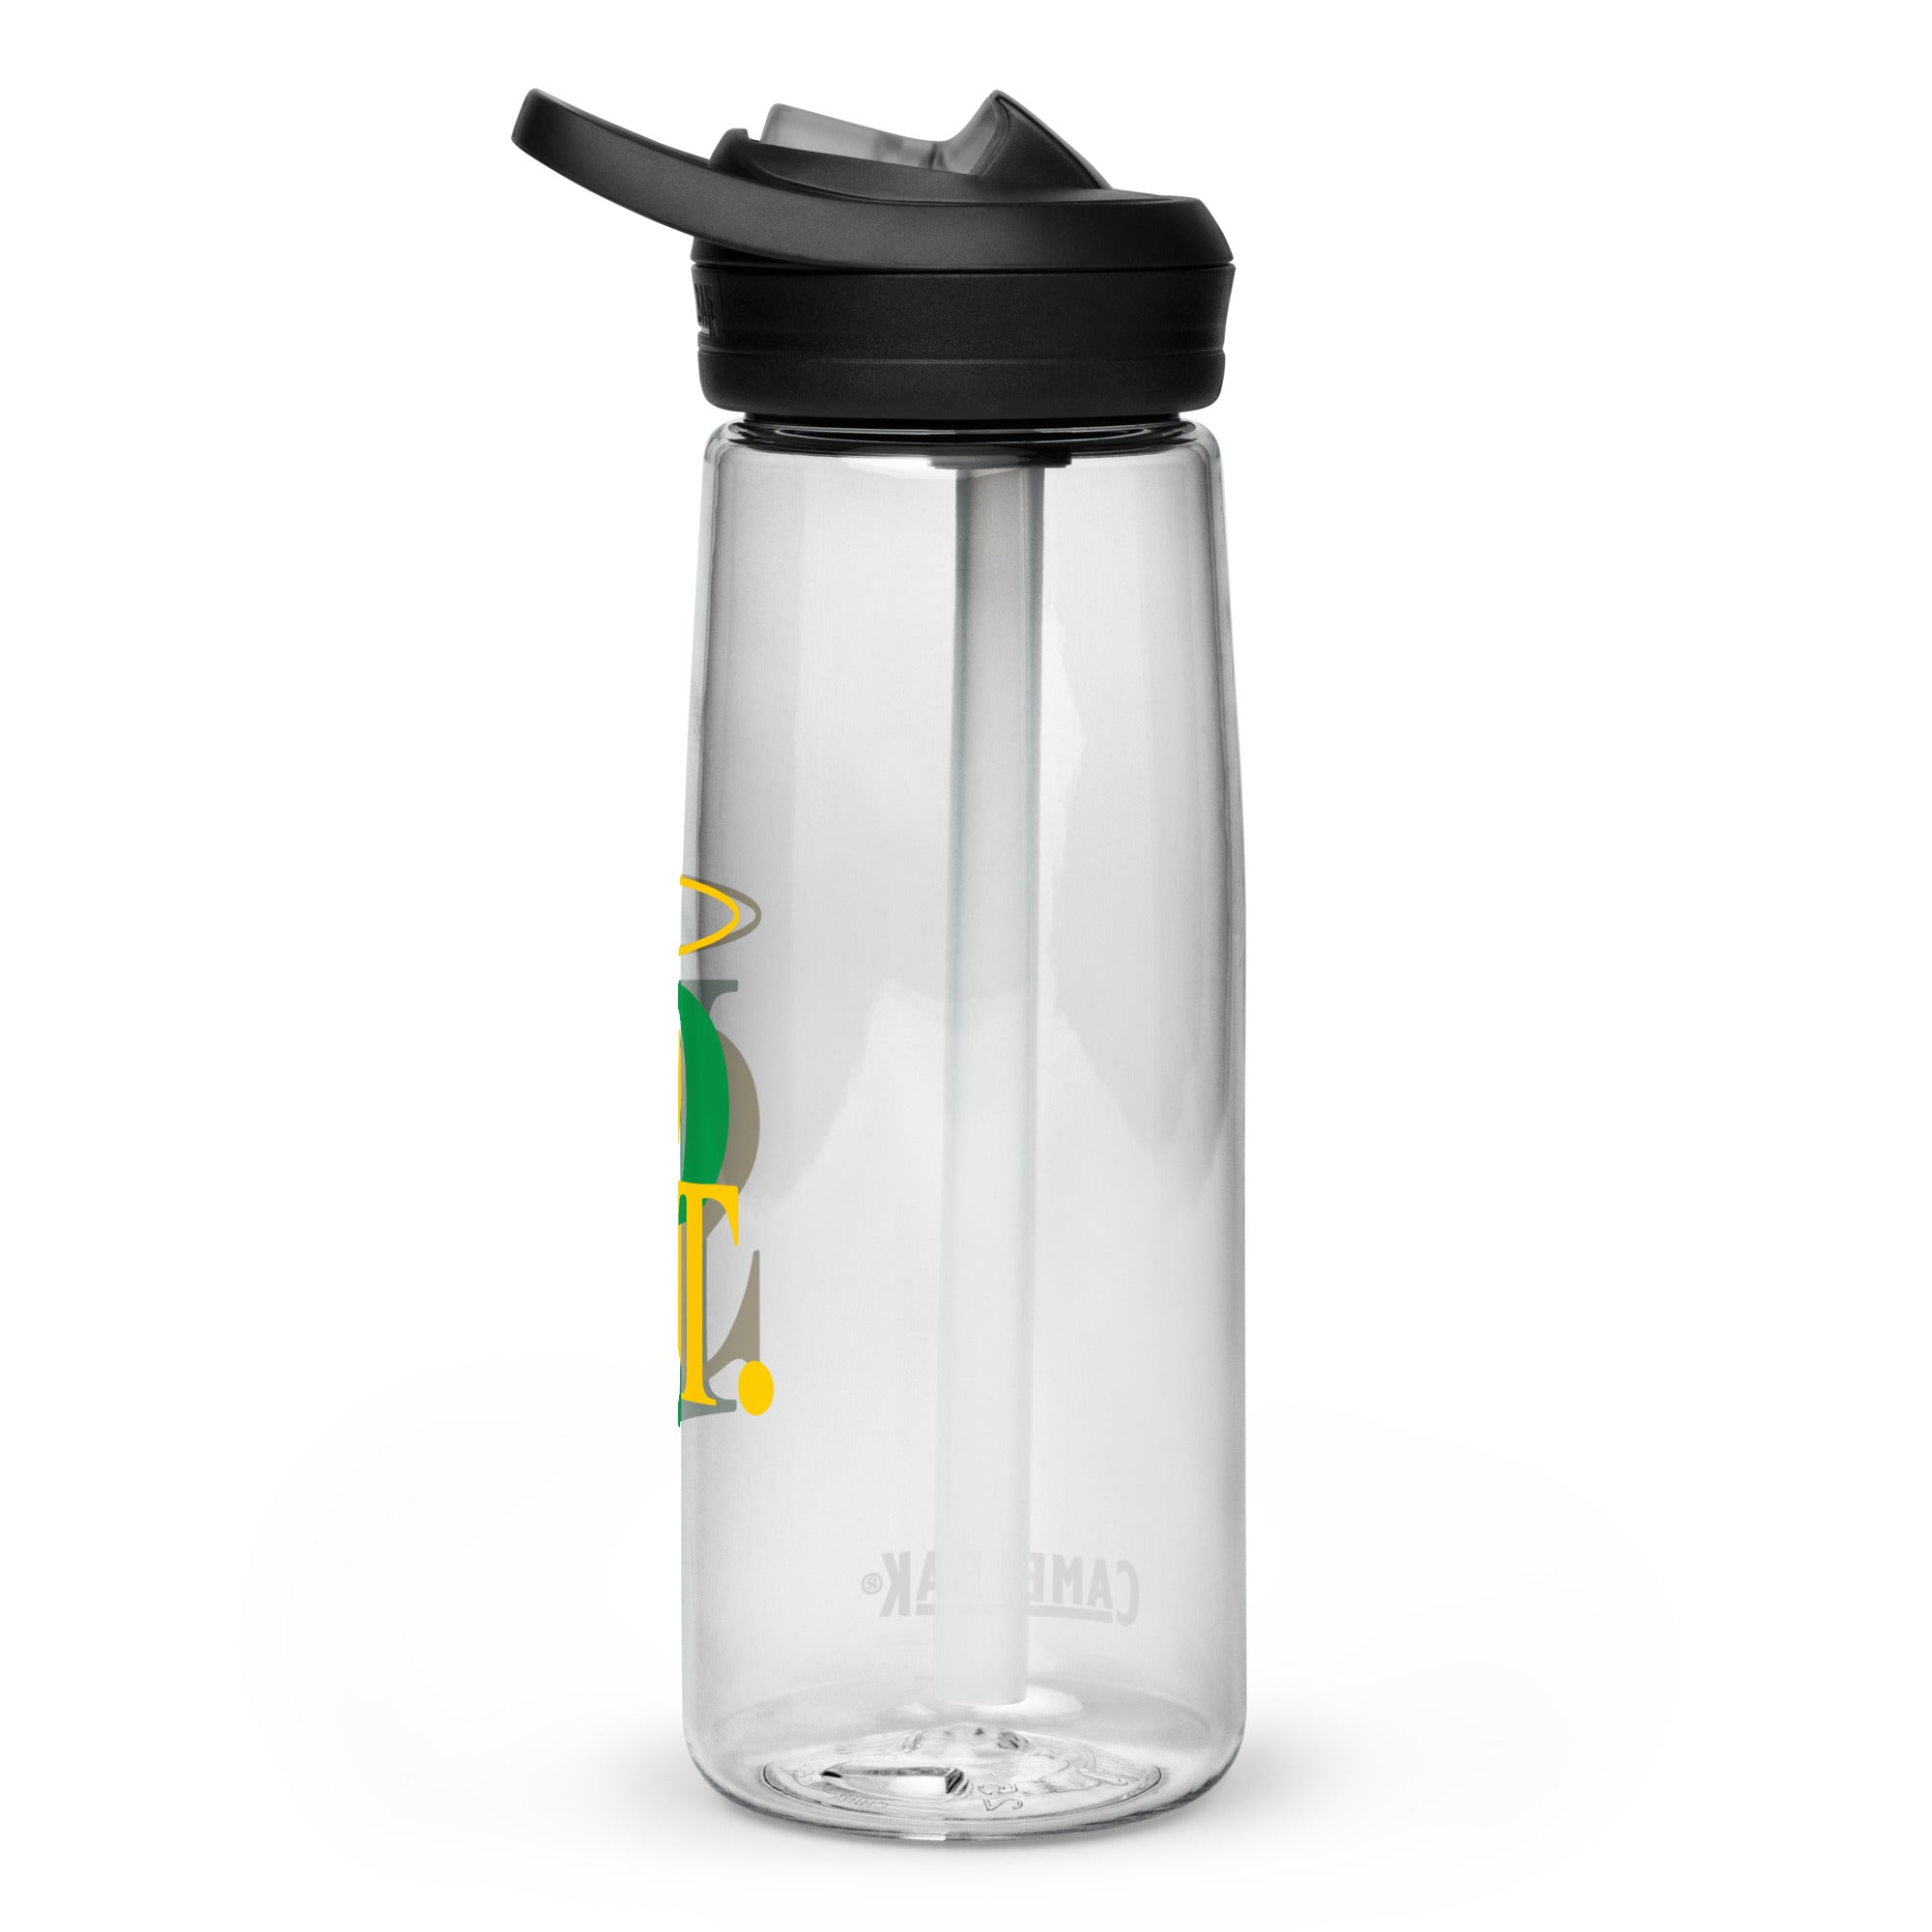 SPCYO Sports water bottle